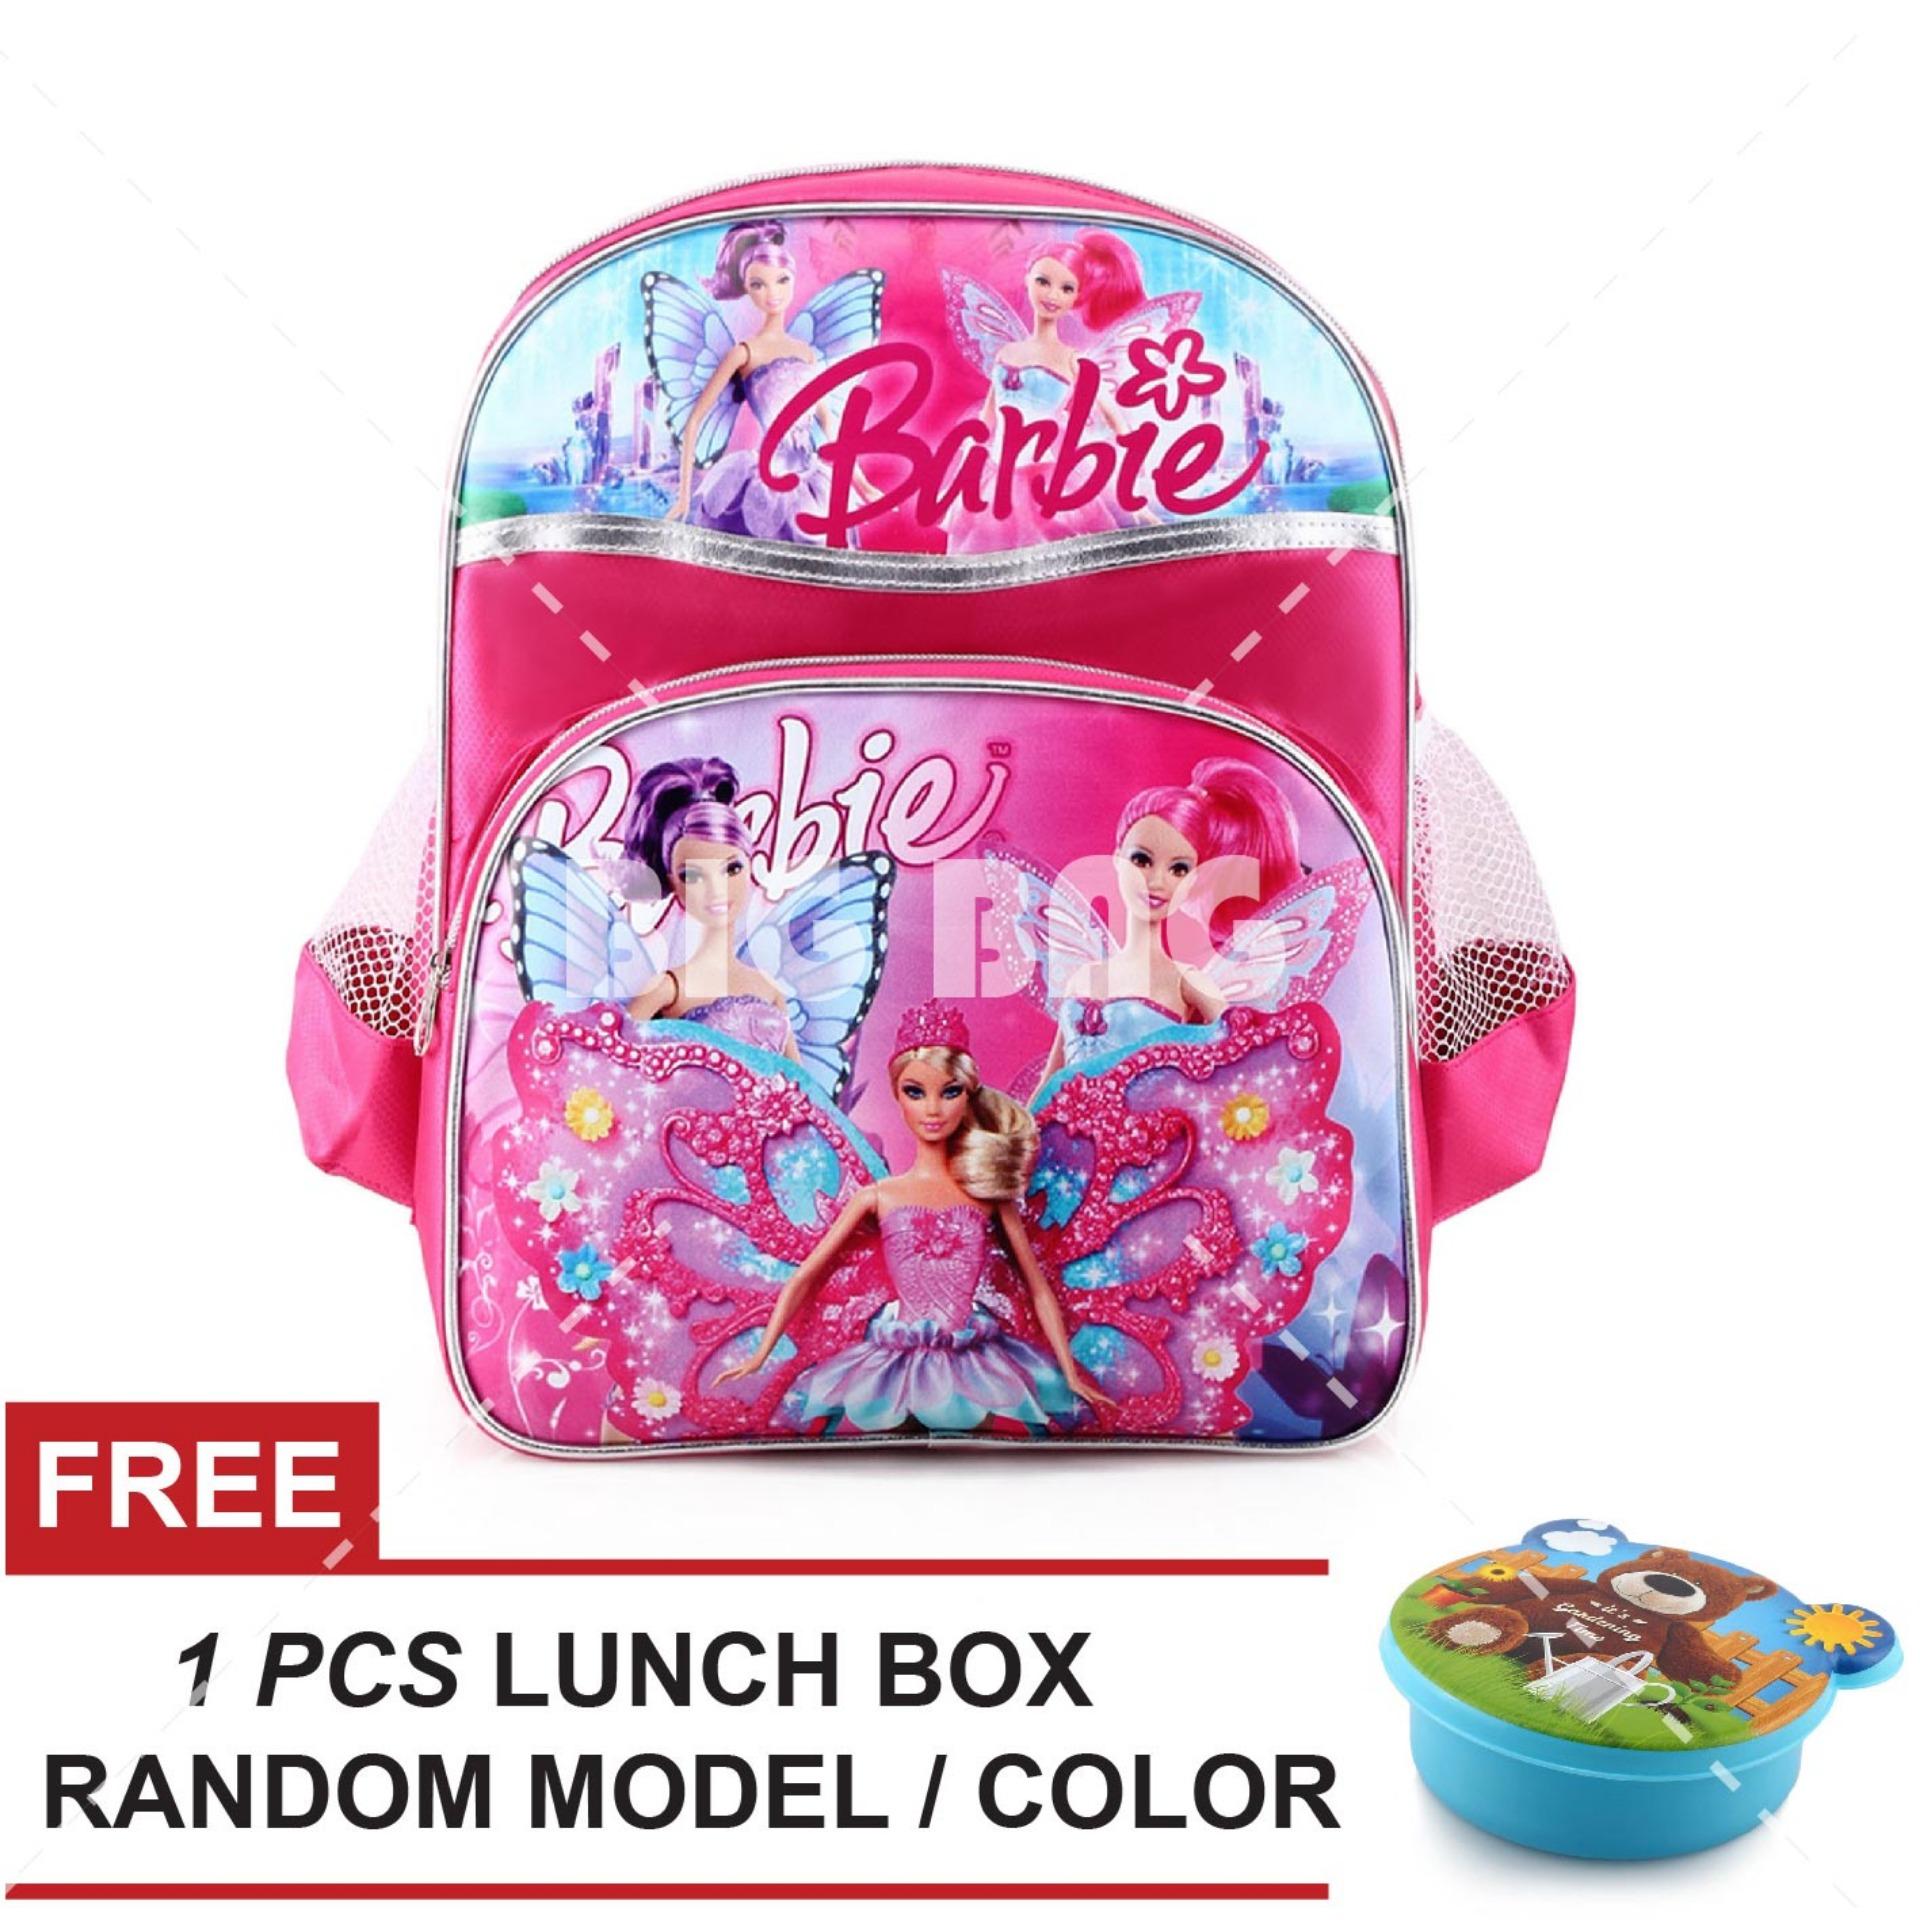 Tas Ransel Anak - Barbie - Three Angel's - School Bag Tas Sekolah Anak - PINK + FREE Lunchbox Random Model / Color Tas Anak Tas Sekolah Tas Anak Karakter